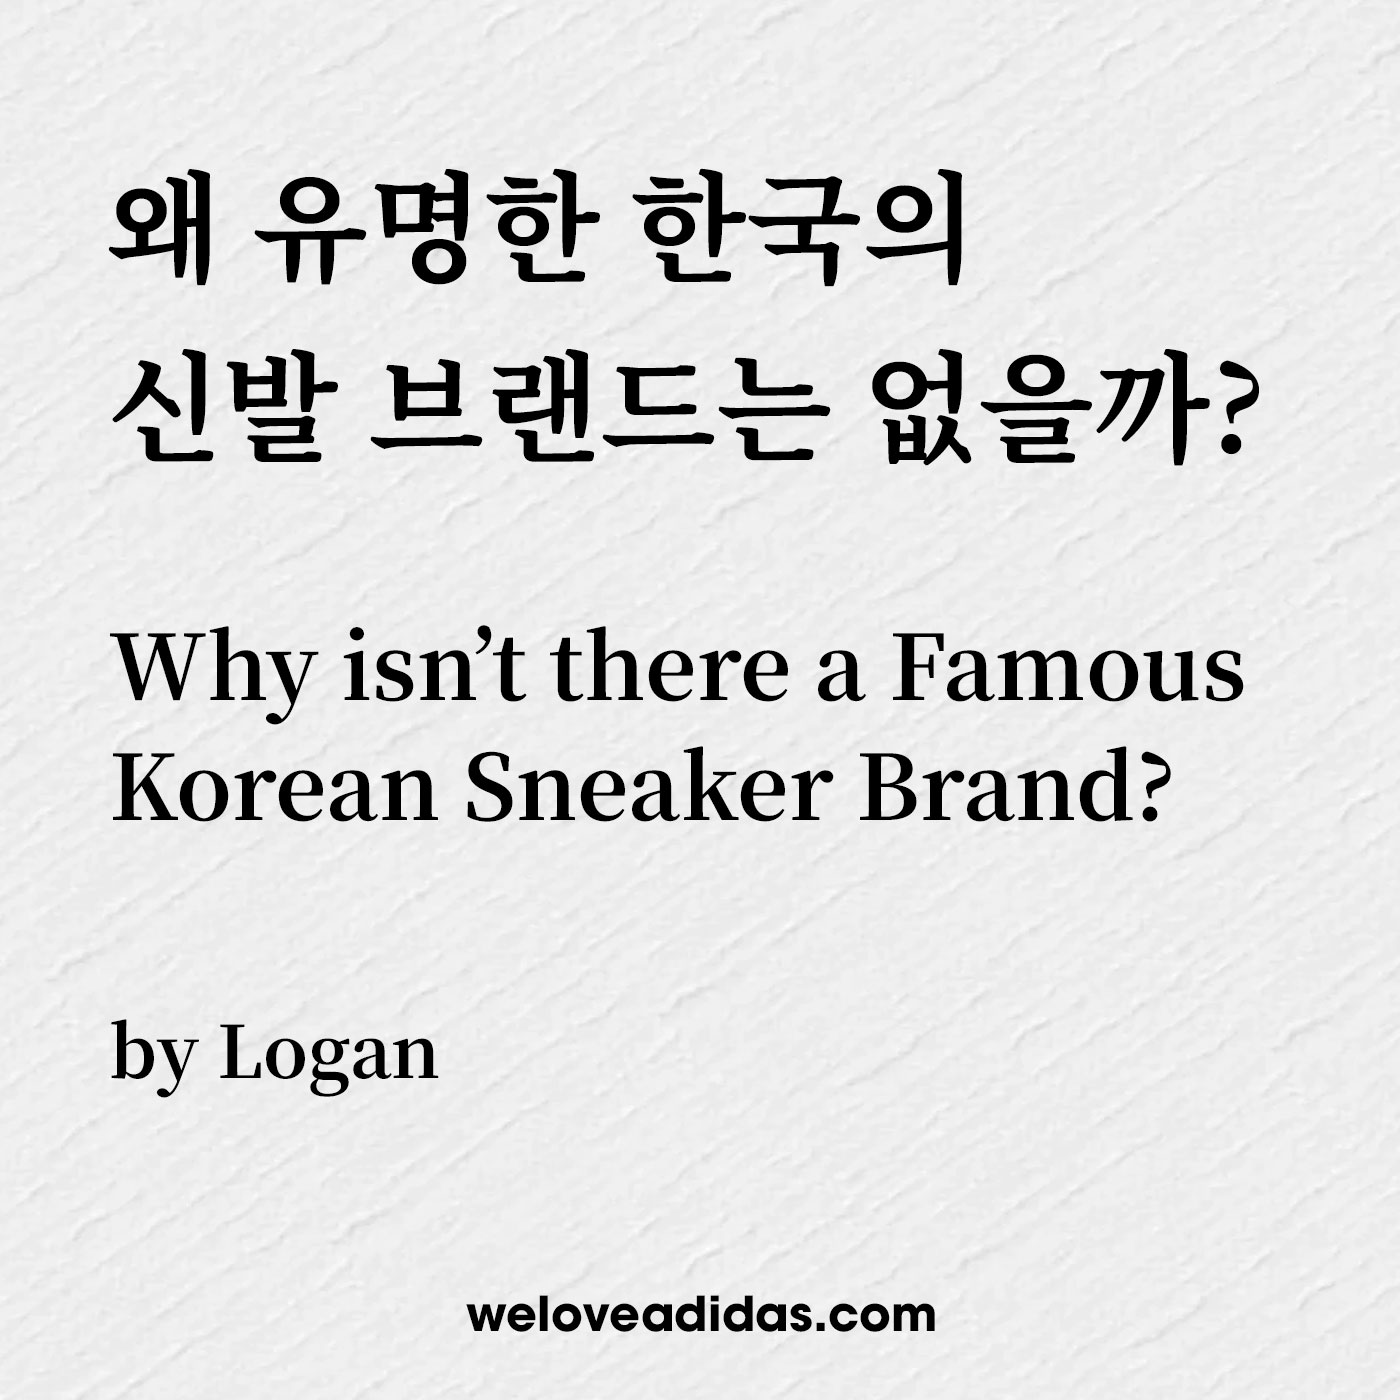 왜 유명한 한국의 신발 브랜드는 없을까?(Why isn’t there a Famous Korean Sneaker Brand?)